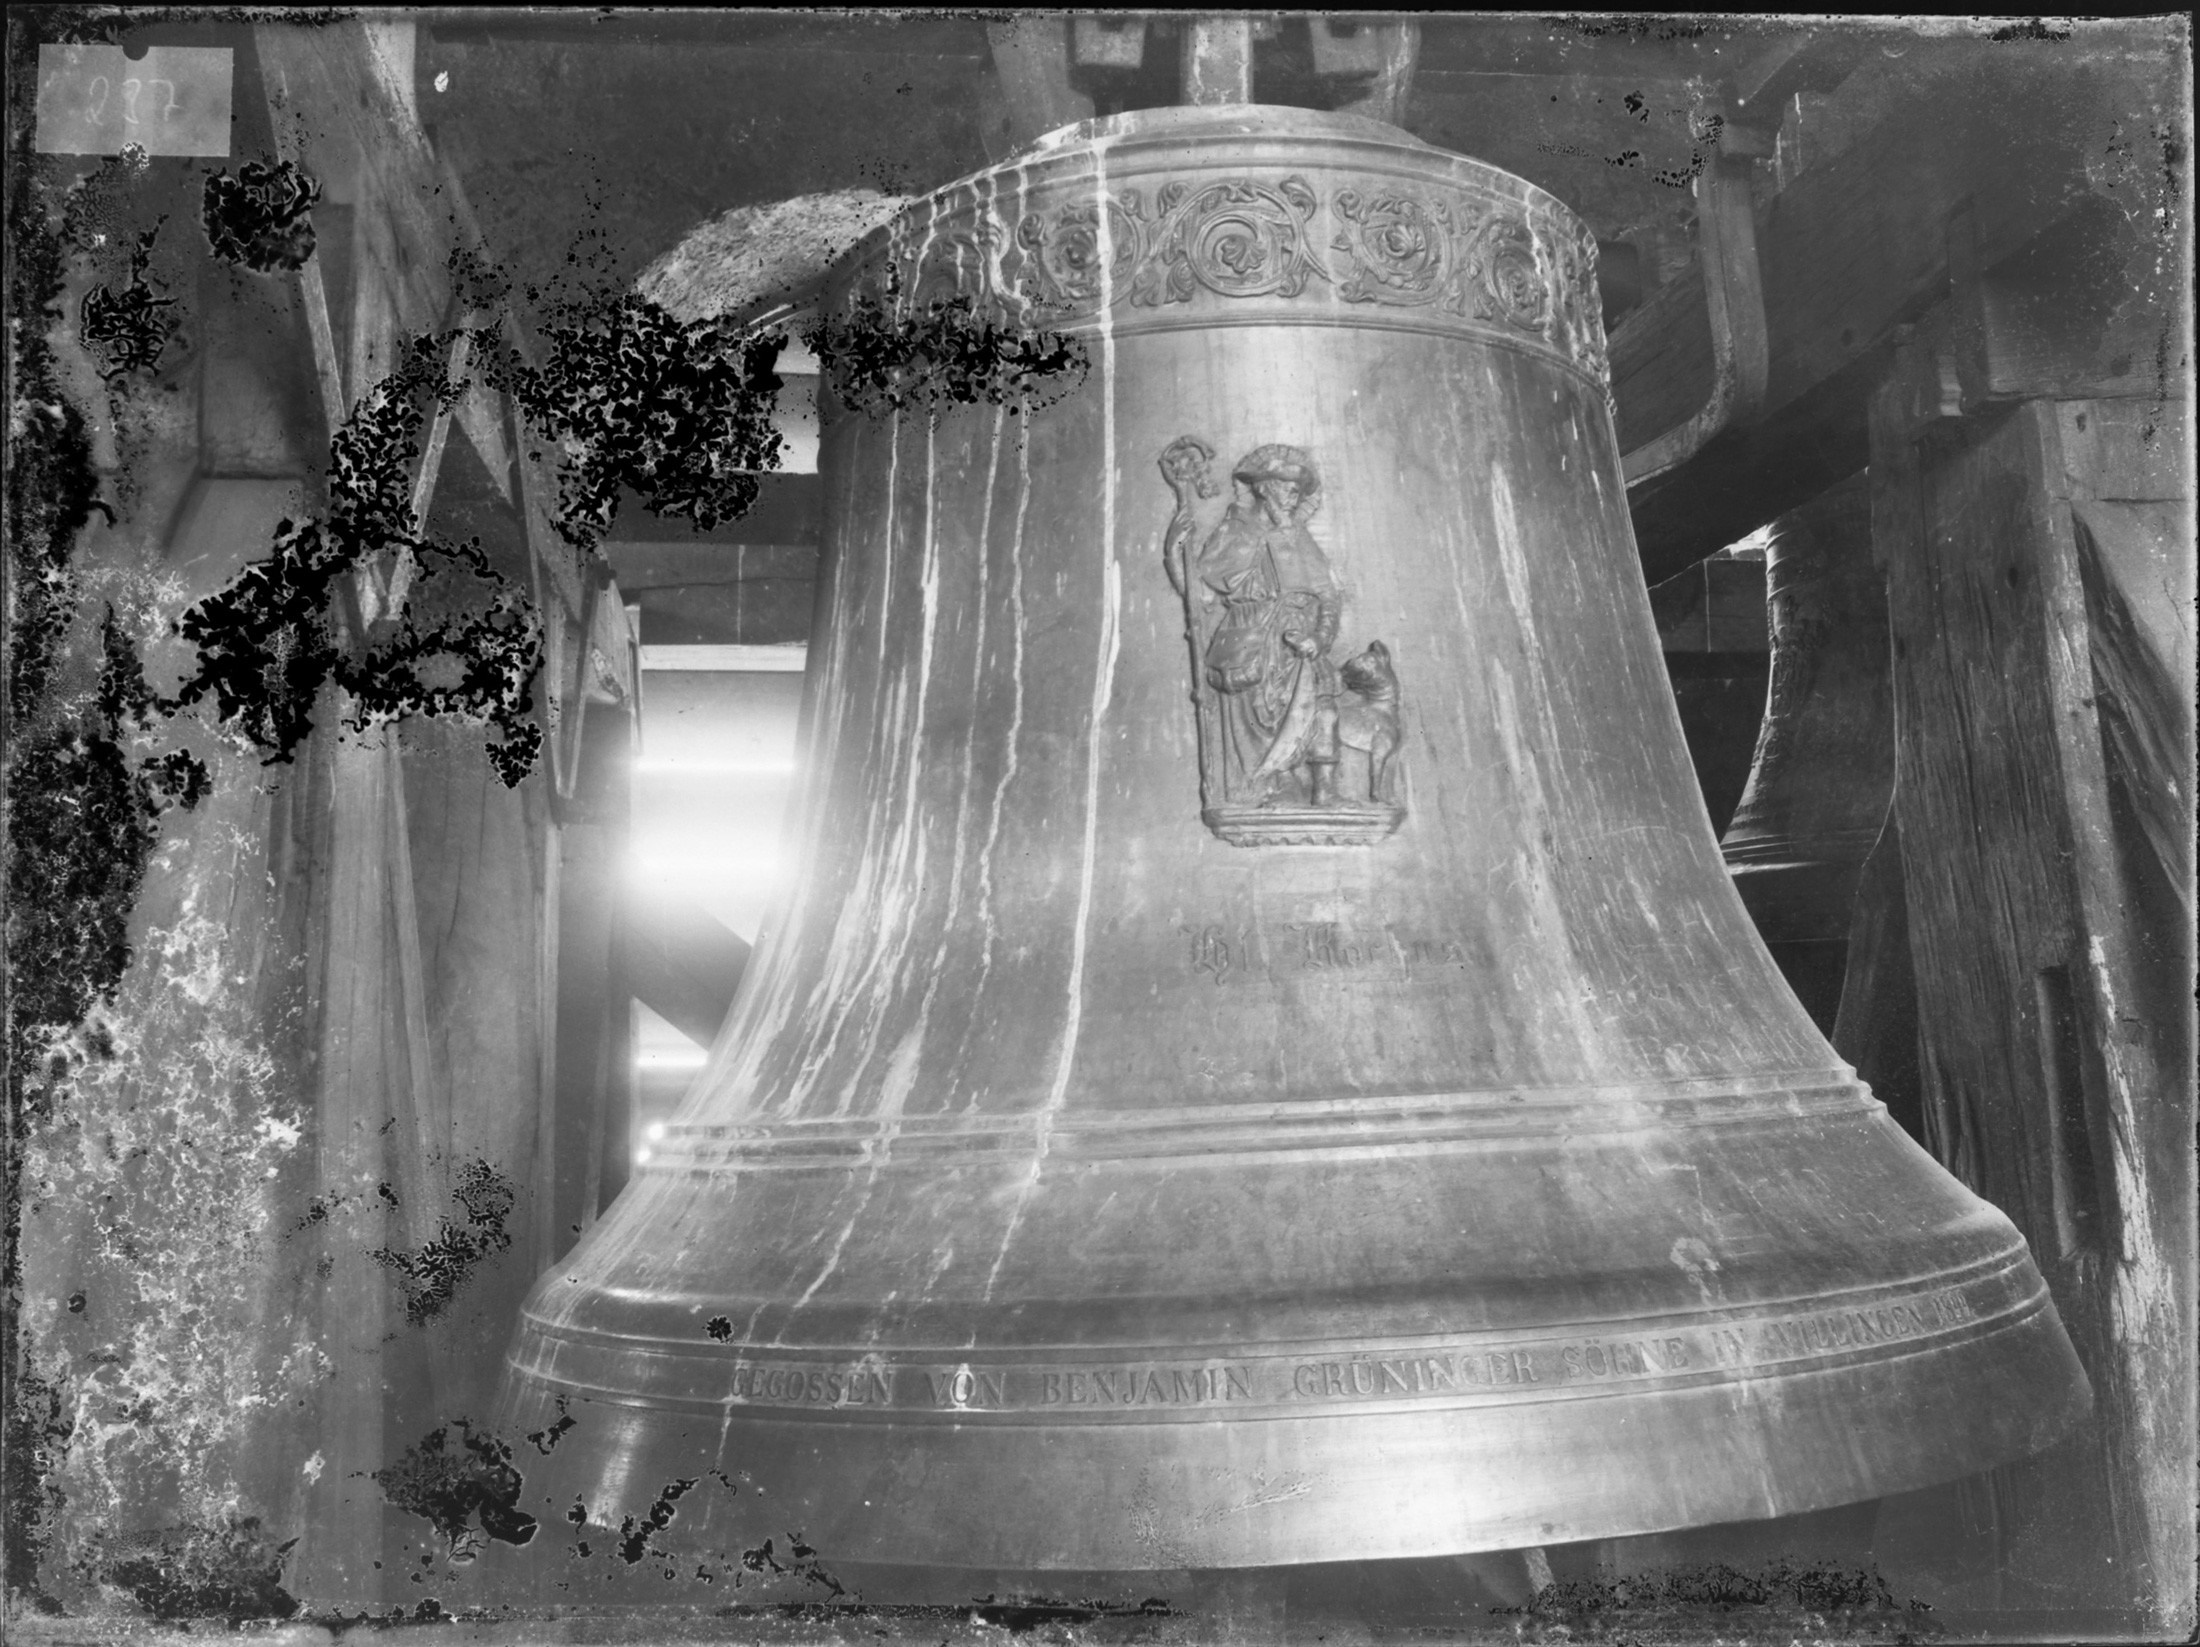 Die Pfarrkirche St. Oswald in Buchen verfügte zu Beginn des 20. Jahrhunderts, als die Aufnahme entstand, über ein fünfstimmiges Geläut. Drei Glocken waren 1899 von der Villinger Glockengießerei Grüninger neu gegossen worden, darunter die abgebildete Rochusglocke. Während die Grüninger-Glocken den Ersten Weltkrieg unbeschadet überstanden, wurden die beiden älteren, aus dem 18. Jahrhundert stammenden Glocken eingeschmolzen. Zwei der Grüninger-Glocken, darunter die Rochusglocke, wurden schließlich 1942 eingeschmolzen, so dass nur noch die dem Kirchenpatron St. Oswald geweihte Glocke von 1899 übrig war. 1949 erhielt das Geläut drei neue Glocken, 1976 kam eine neue Rochusglocke hinzu, so dass das Geläut seither wieder fünfstimmig ist.